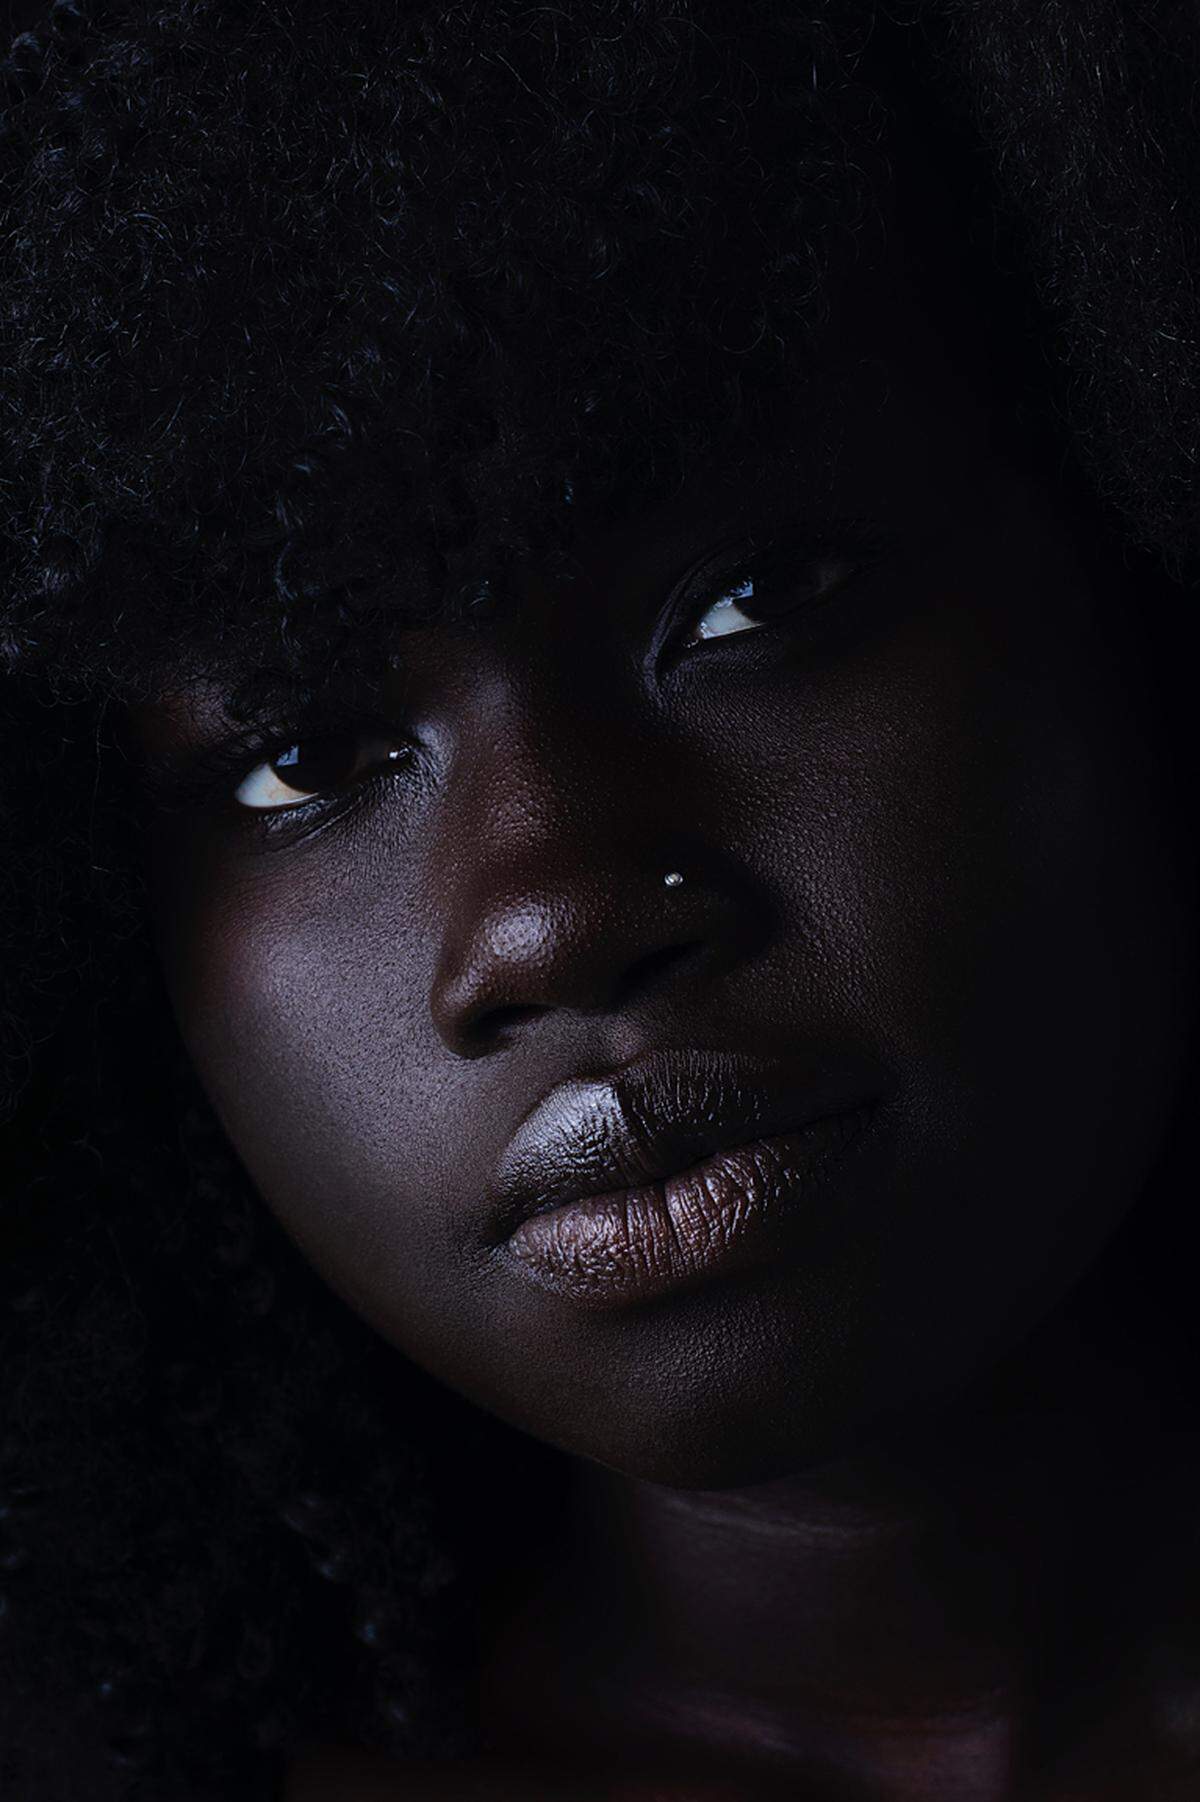 Die 18-jährige Amerikanerin Zelle Westfall aus Atlanta wurde für ihr Werk „Abuot“ ausgezeichnet. Sie beschreibt ihr Foto so: „Abuot ist meine Freundin aus der Schule und eine der witzigsten Menschen, die ich kenne. In der heutigen Gesellschaft, in der die Medien mit Produkten zur Hautaufhellung werben und Dunkelhäutige diskriminieren, ist es wichtig, die Schönheit von dunkelhäutigen Frauen hervorzuheben, denen oftmals vermittelt wird, sie seien ‚zu dunkel‘“.